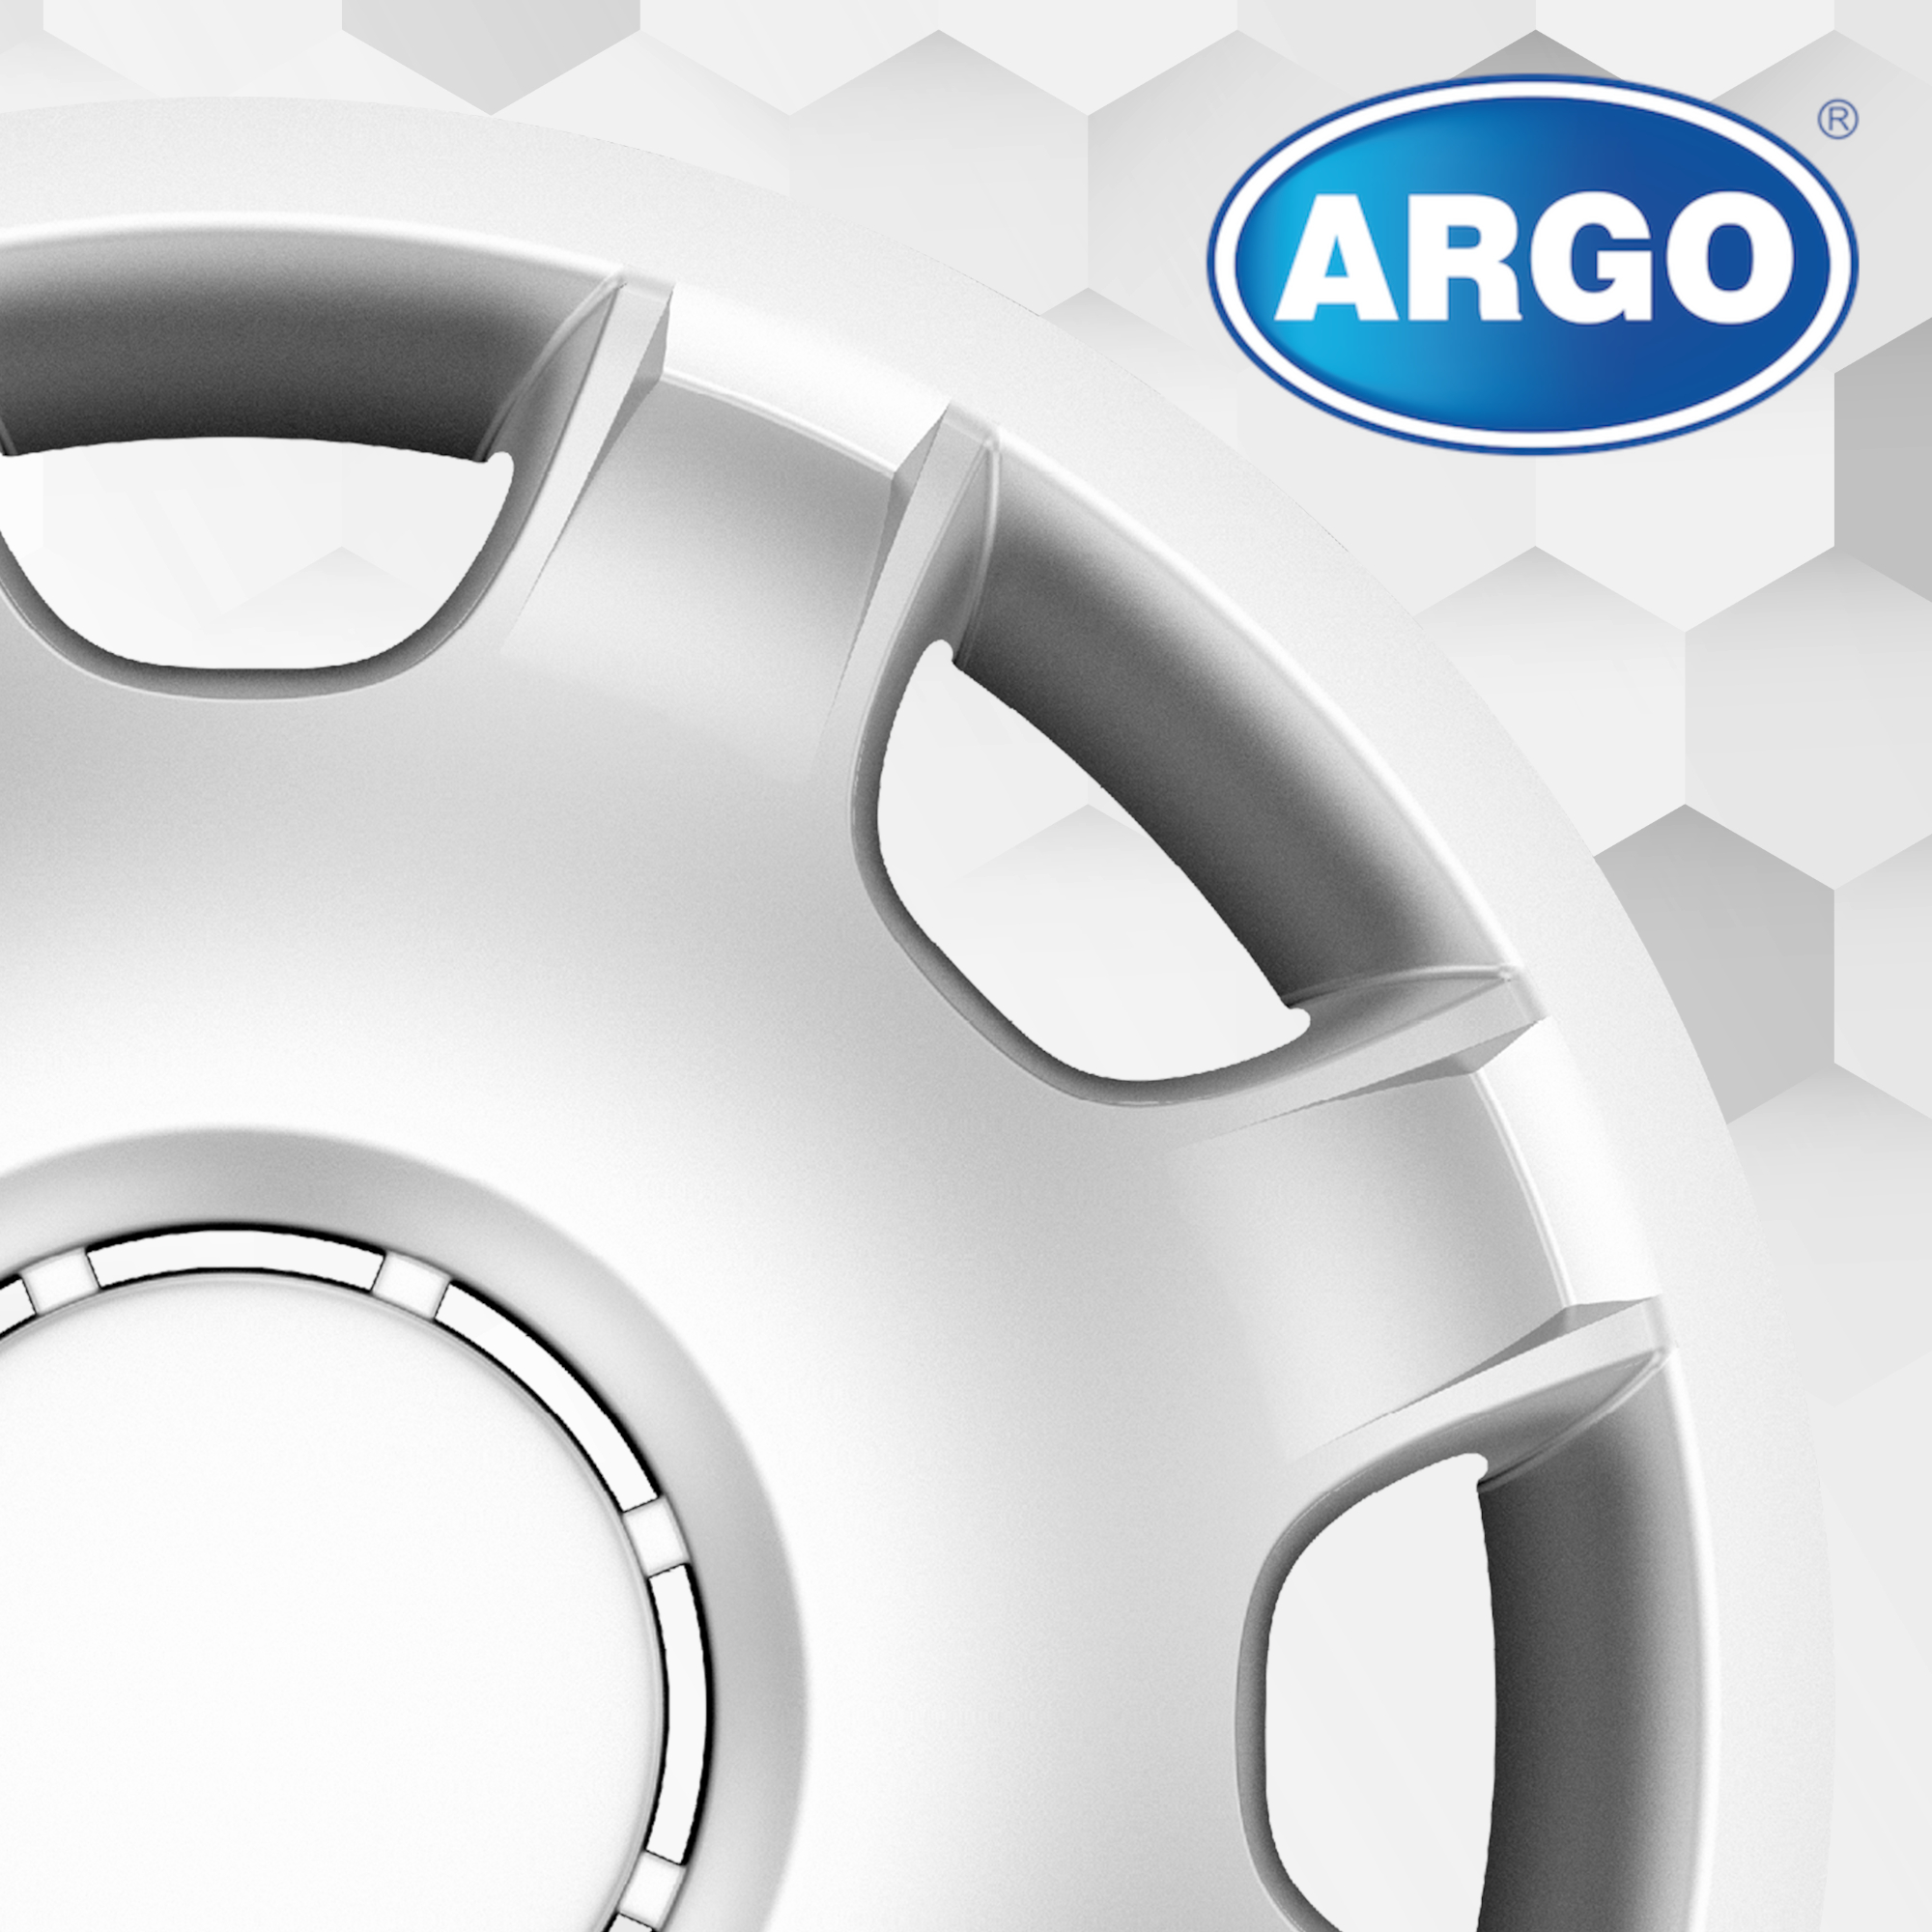 ARGO 14 SPEED Copricerchi 14 Inch 4 Serie / Kit argento 14 SPEED